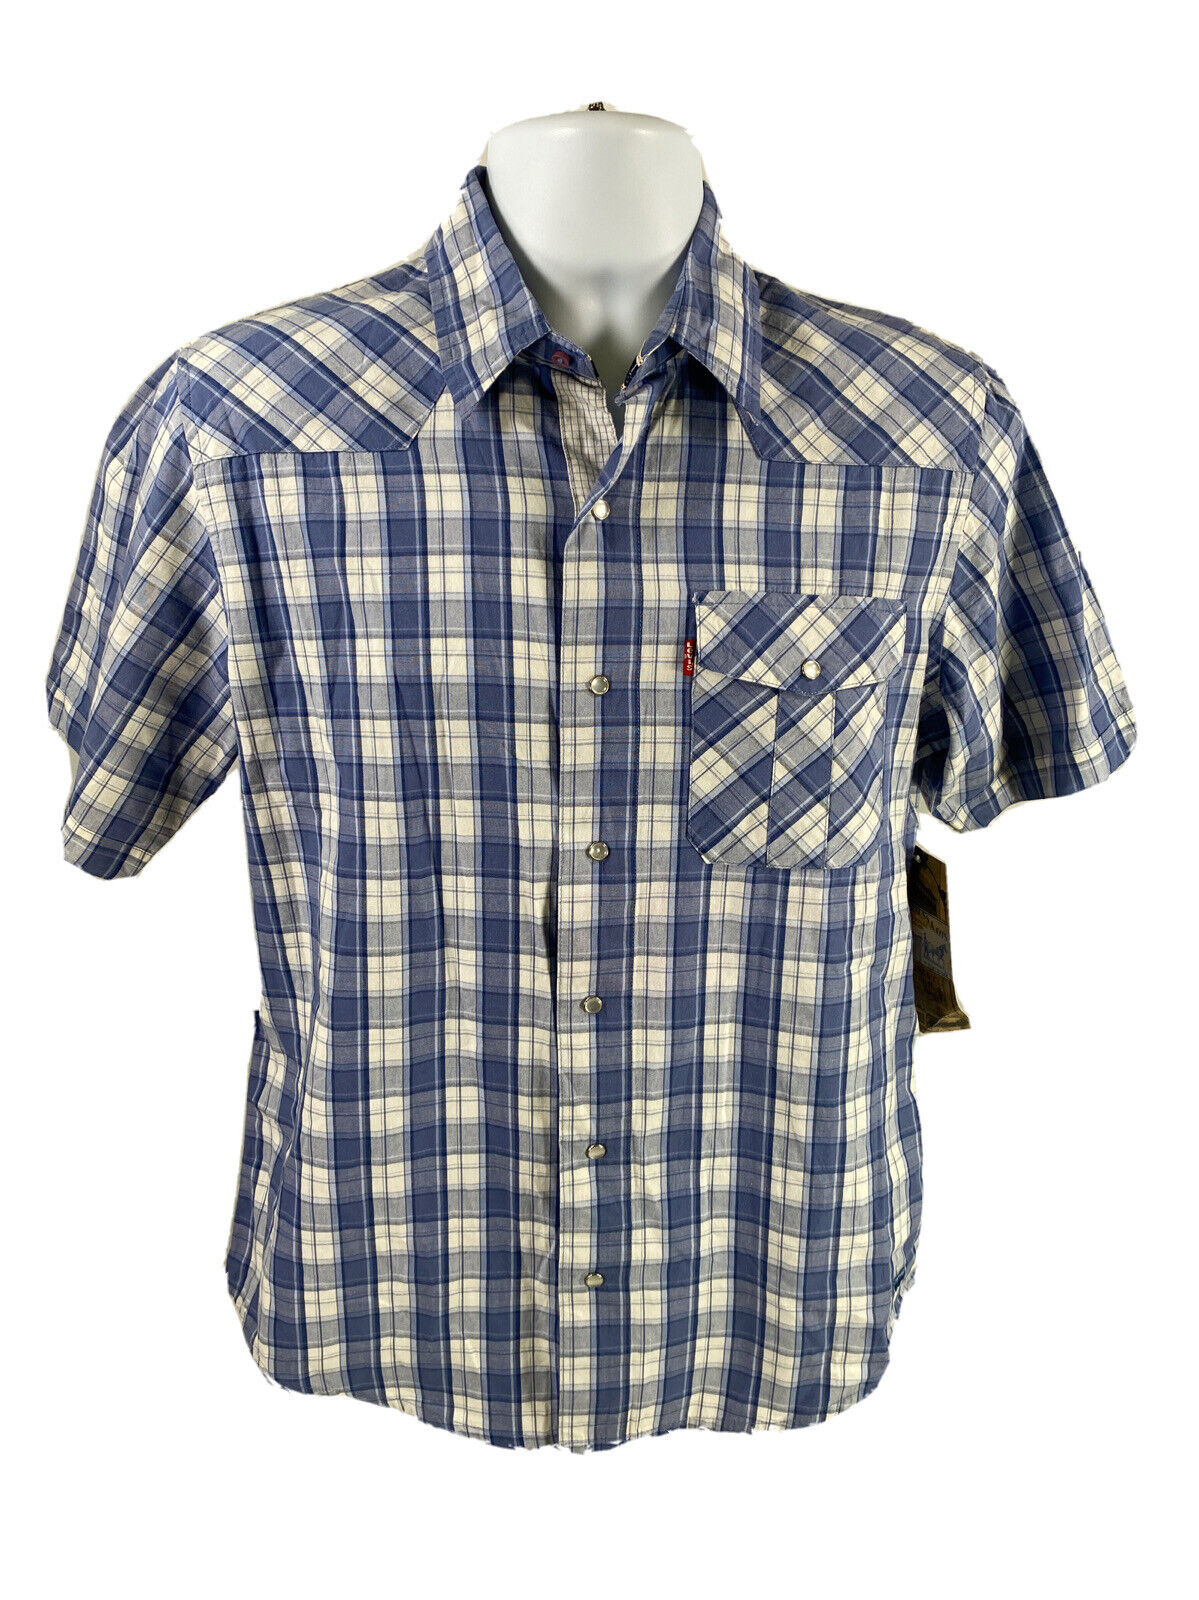 NEW Levi Strauss Men's Blue Plaid Short Sleeve Button Up Shirt - S